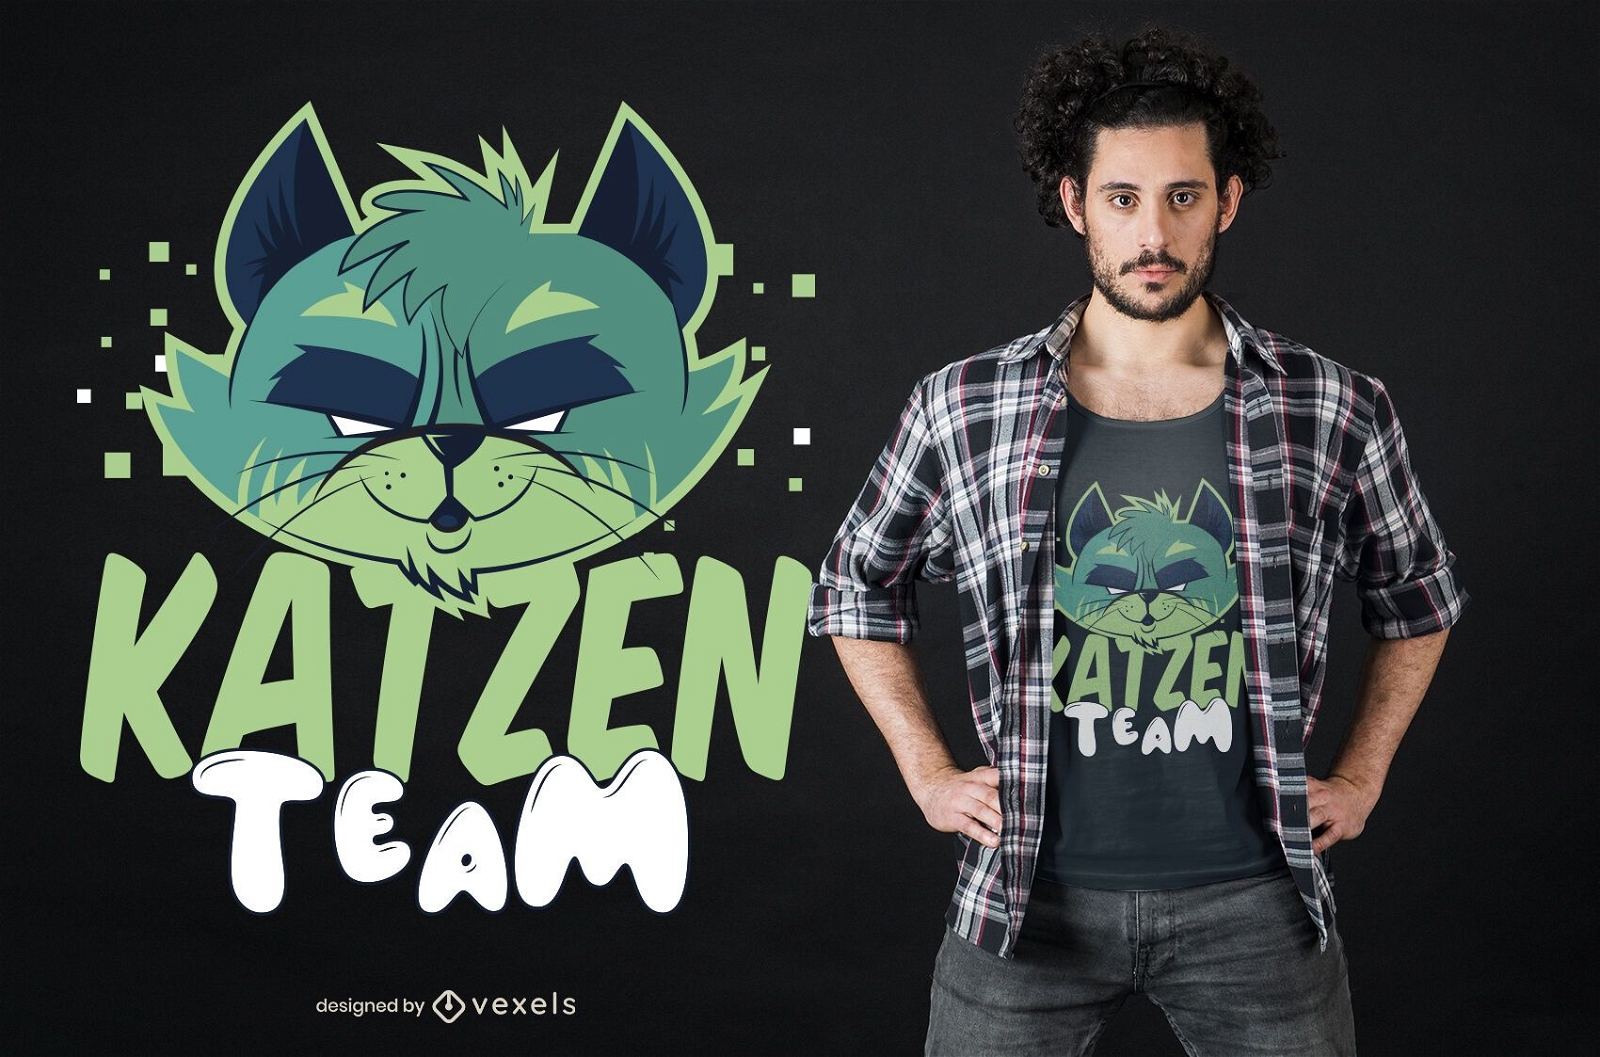 Team katzen t-shirt design